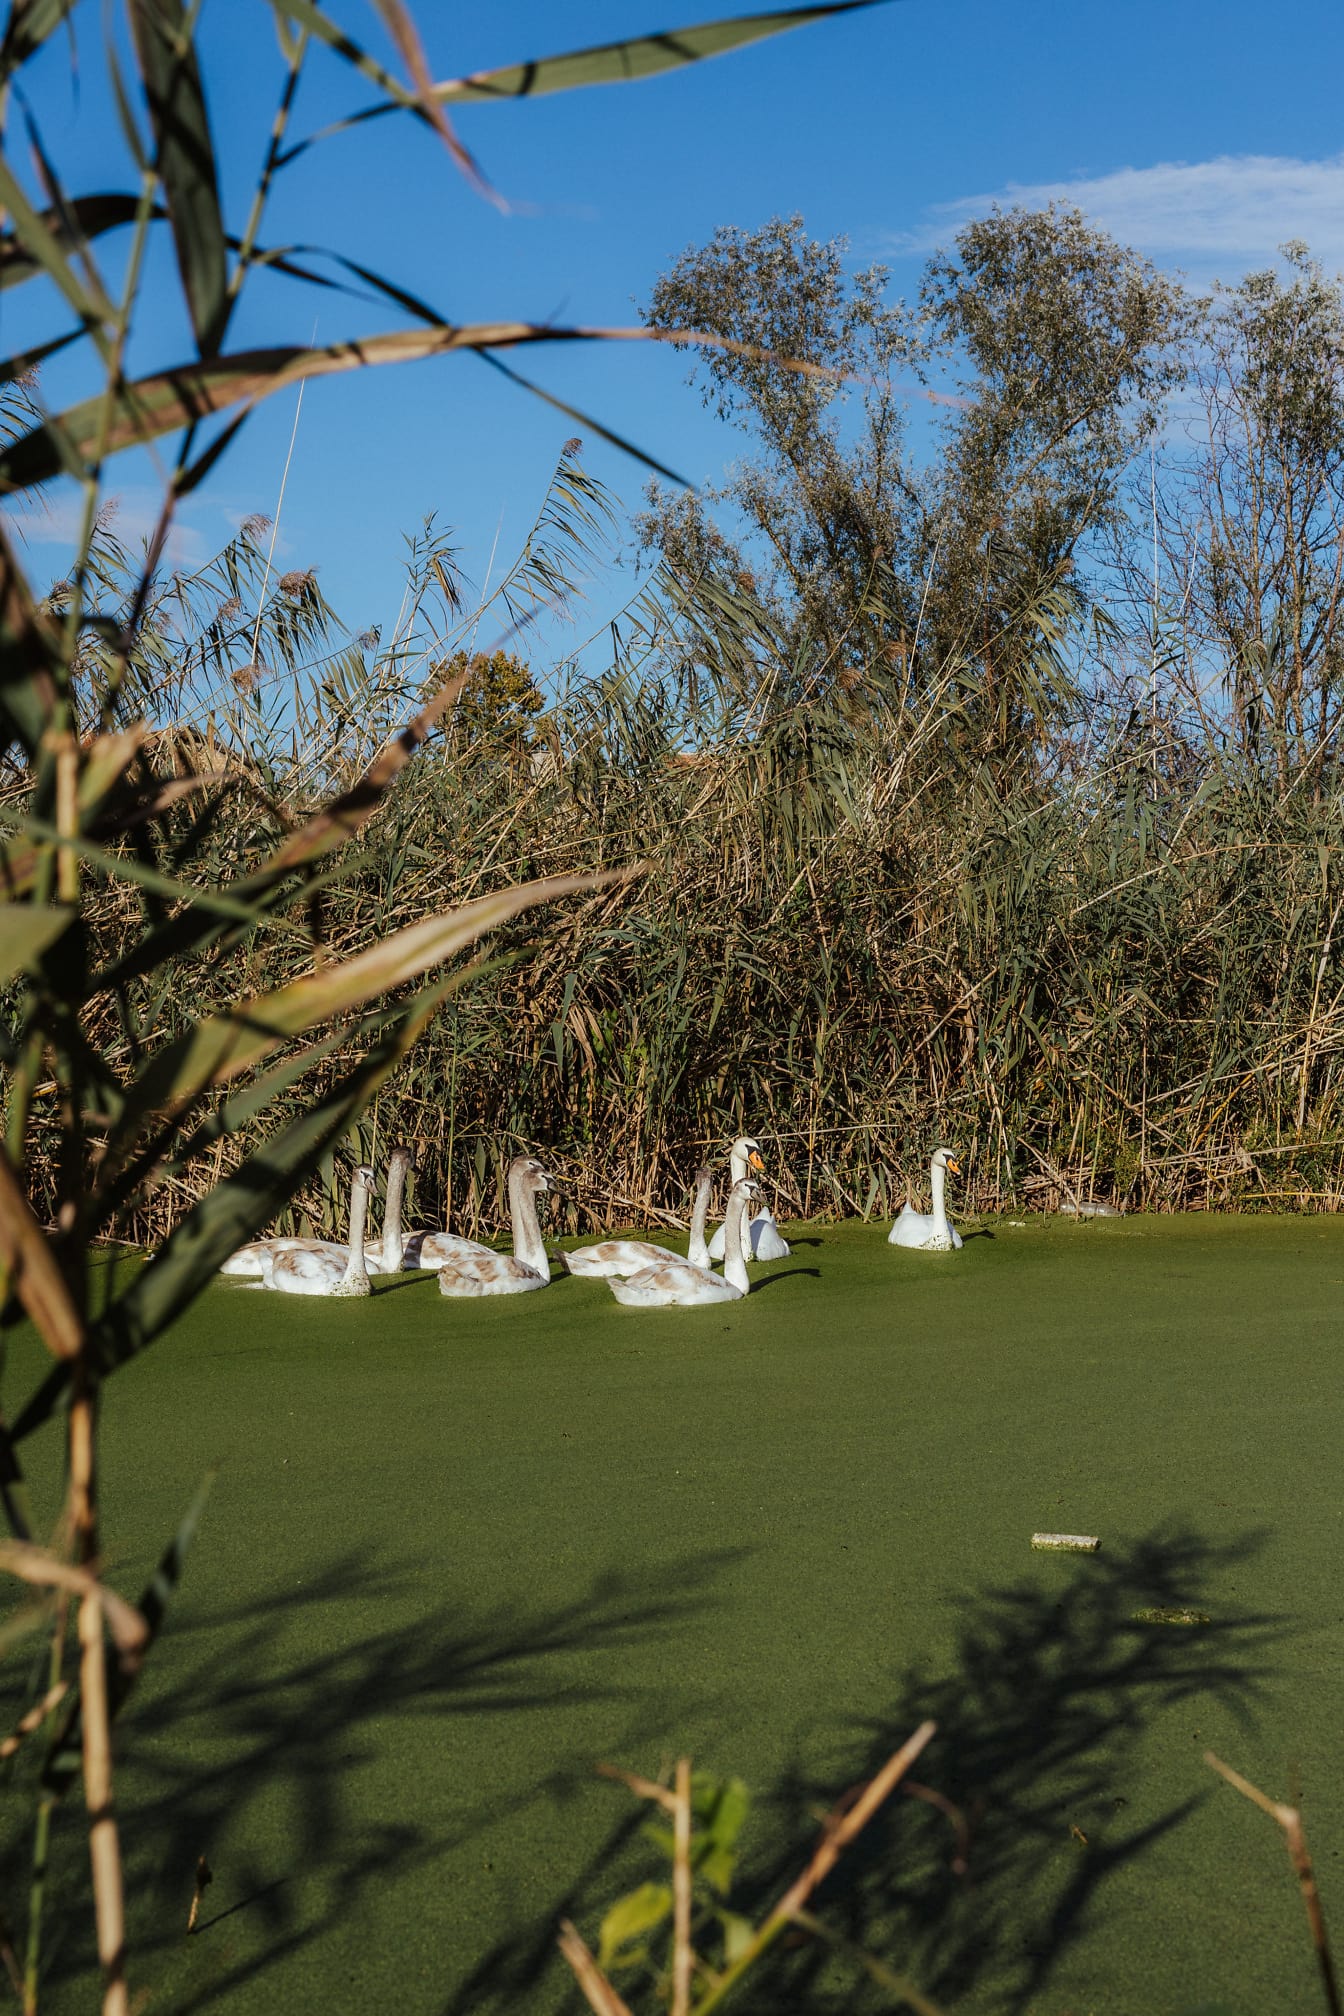 Gia đình chim đàn chim thiên nga bơi trong kênh đầm lầy